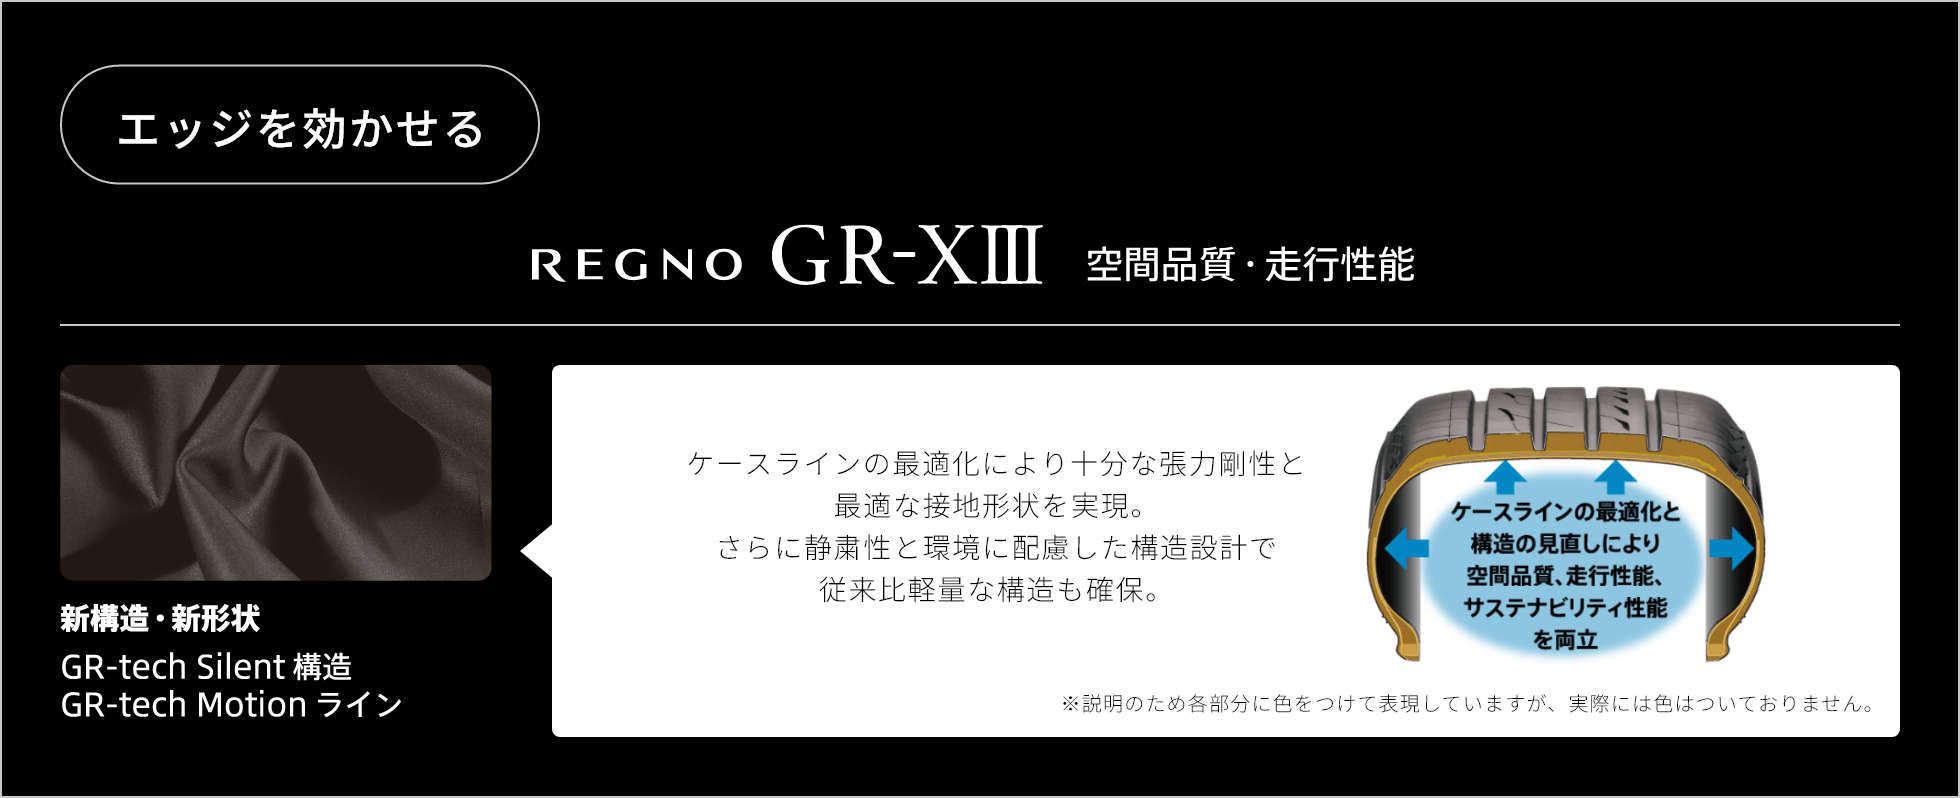 エッジを効かせる　REGNO GR-ⅩⅢ 空間品質・走行性能　新構造・新形状 GR-tech Silent構造 GR-tech Motion ライン